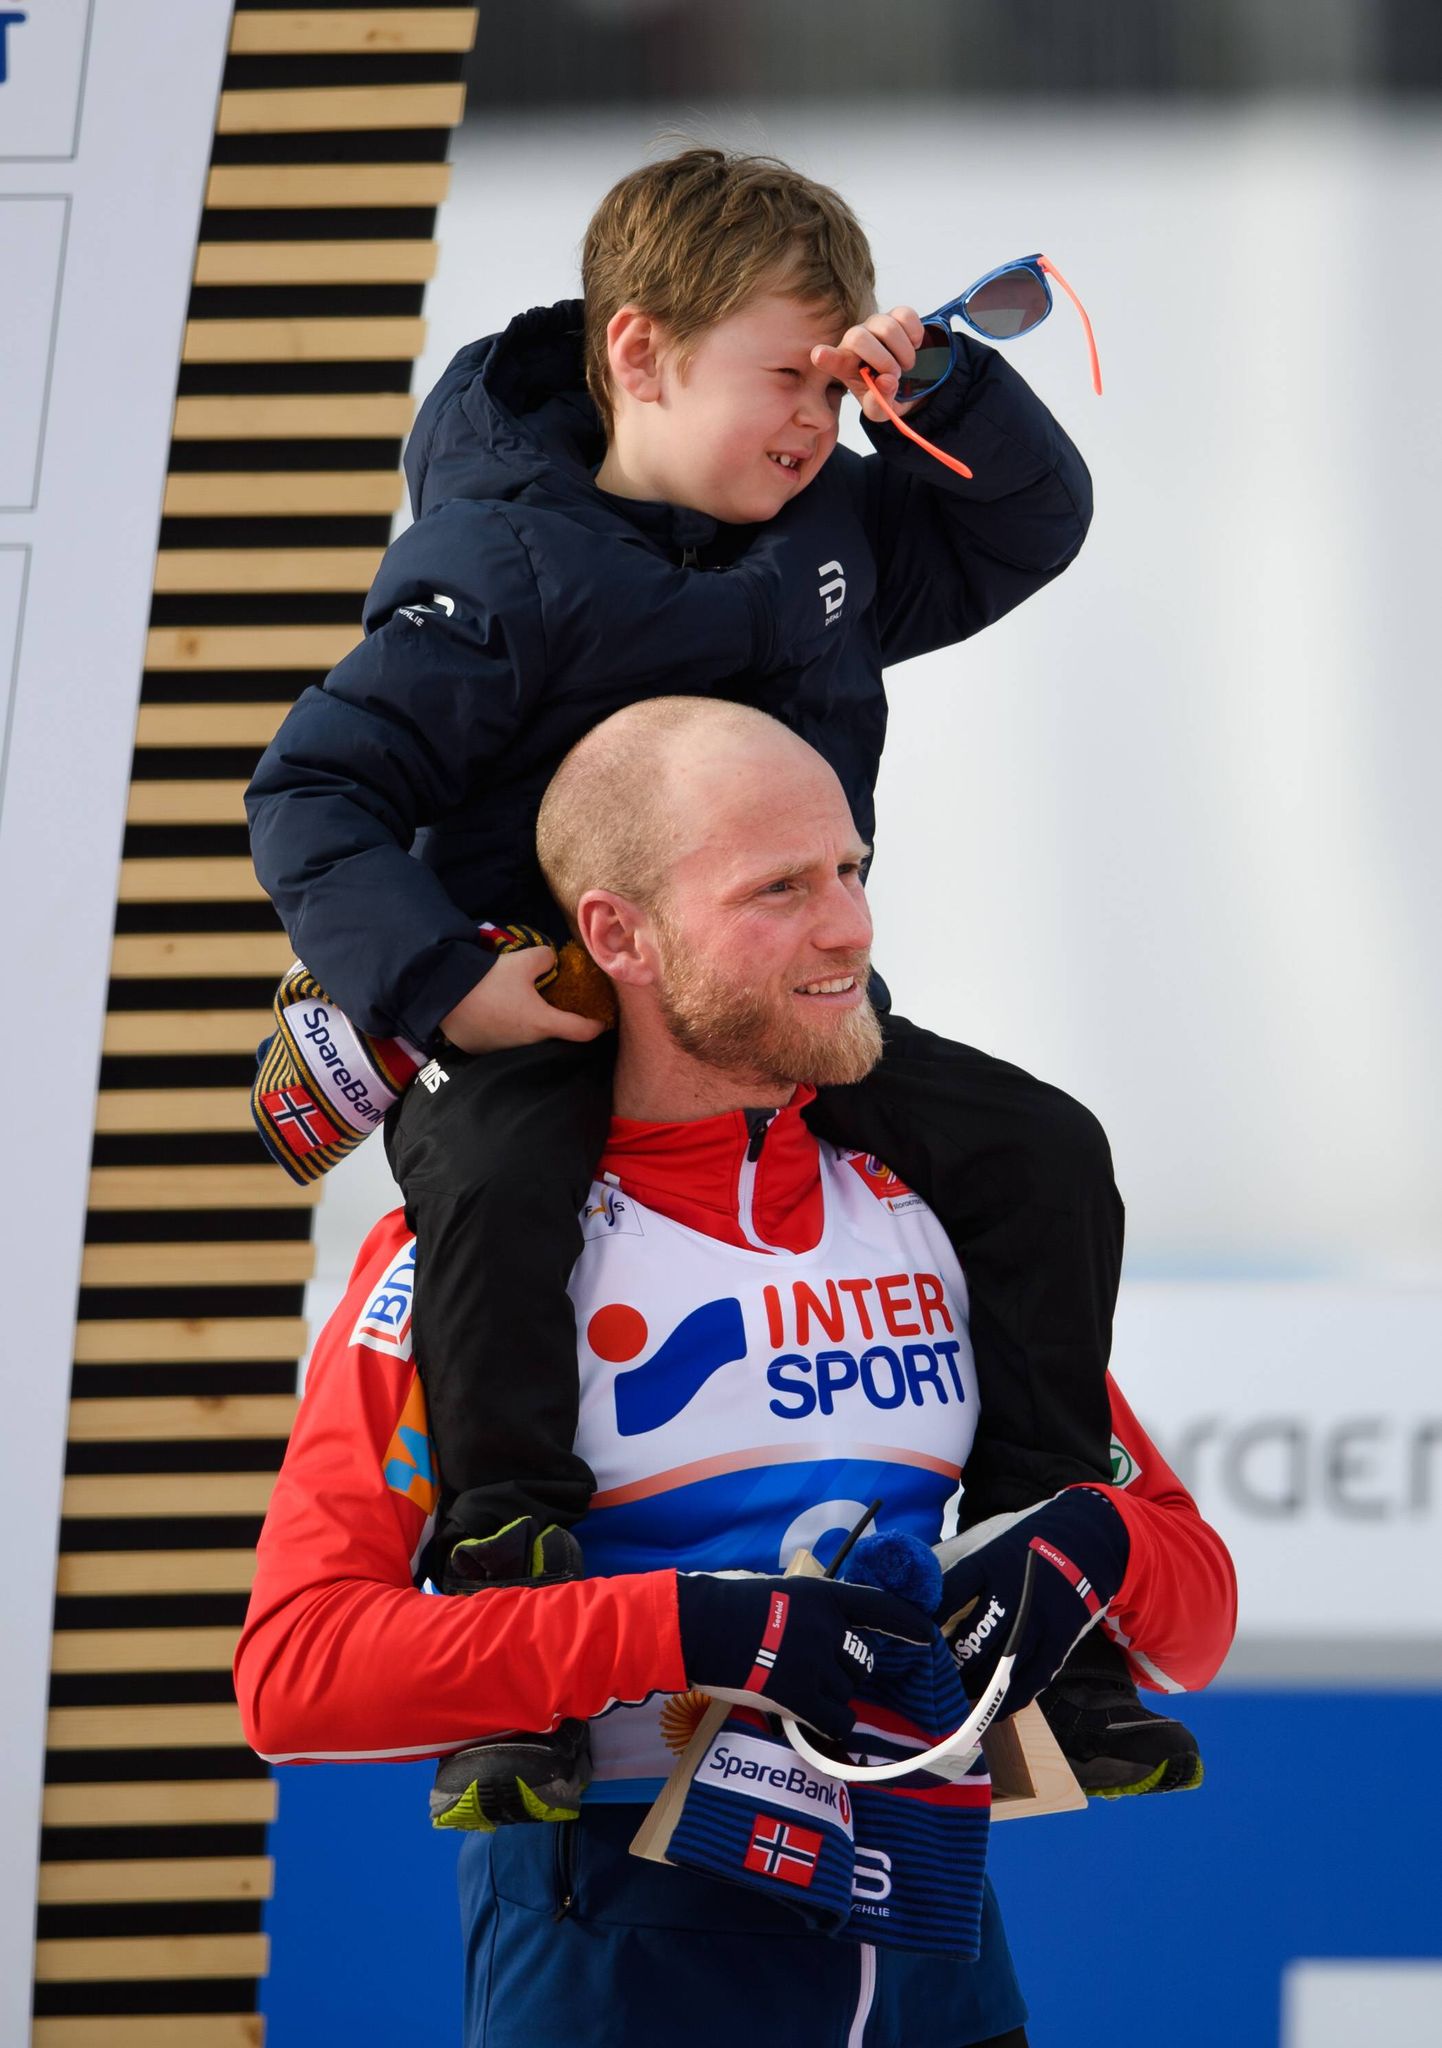 Norra suusaäss Martin Johnsrud Sundby koos pojaga Seefeldi MMil 2019. aastal.